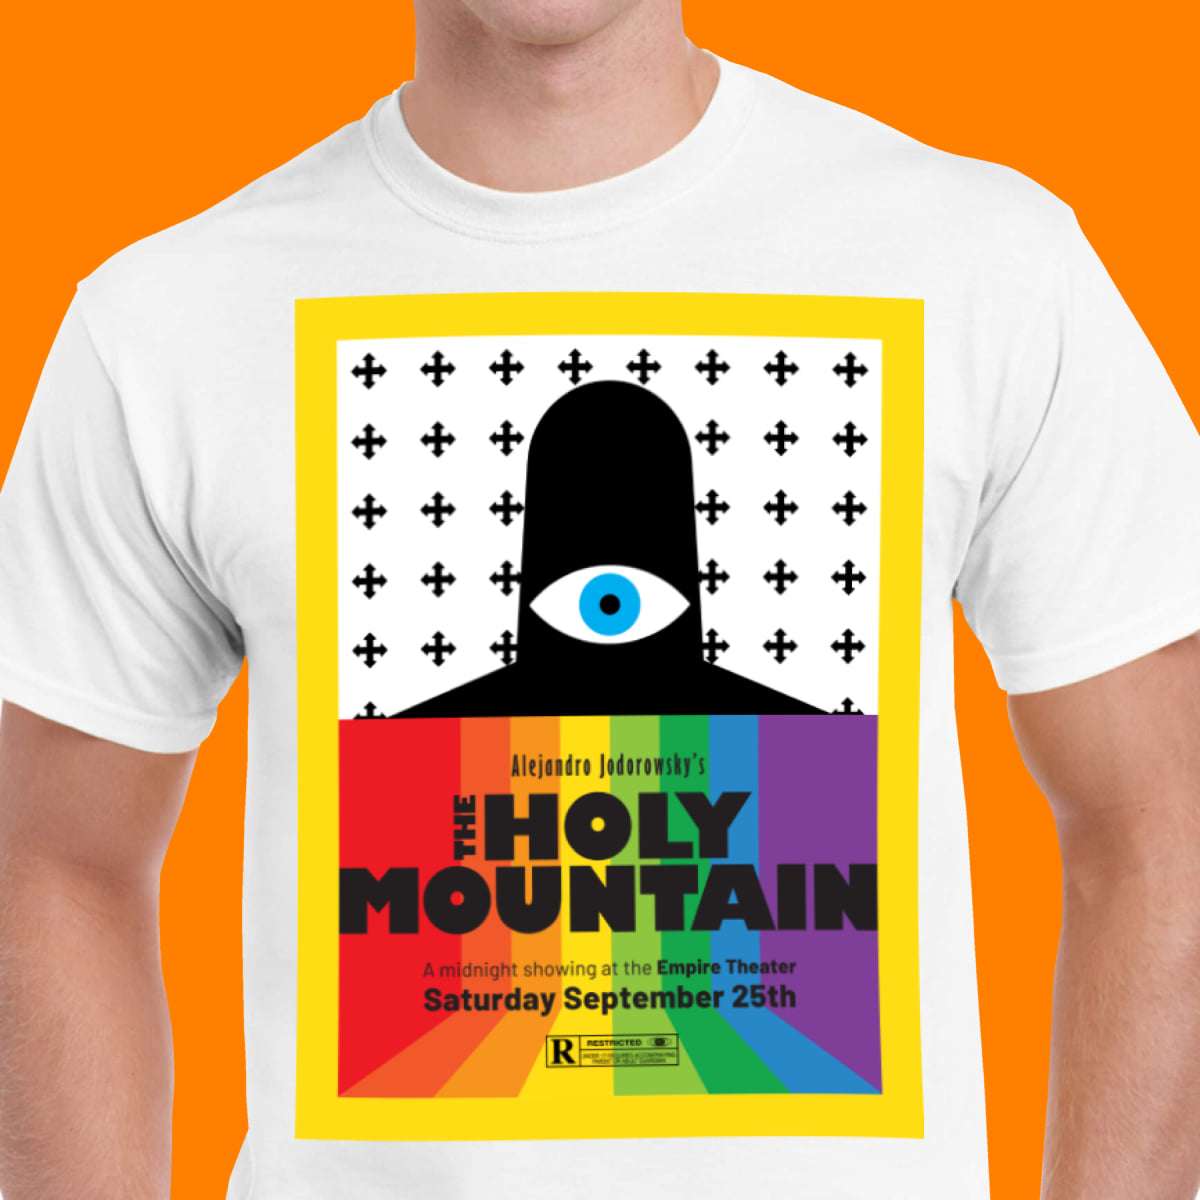 Alejandro jodorowsky's The Holy Mountain